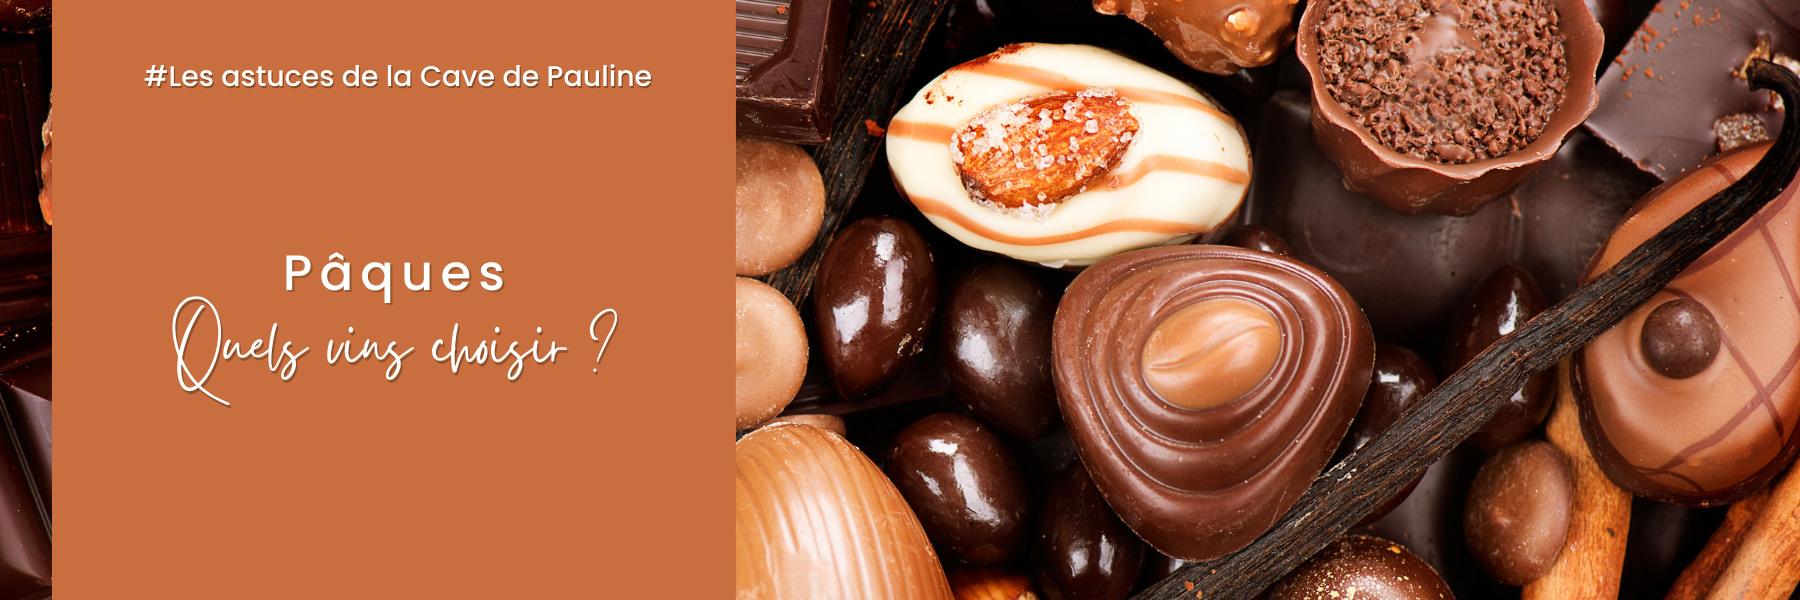 St-Valentin, le chocolat bon pour la santé, Blogue